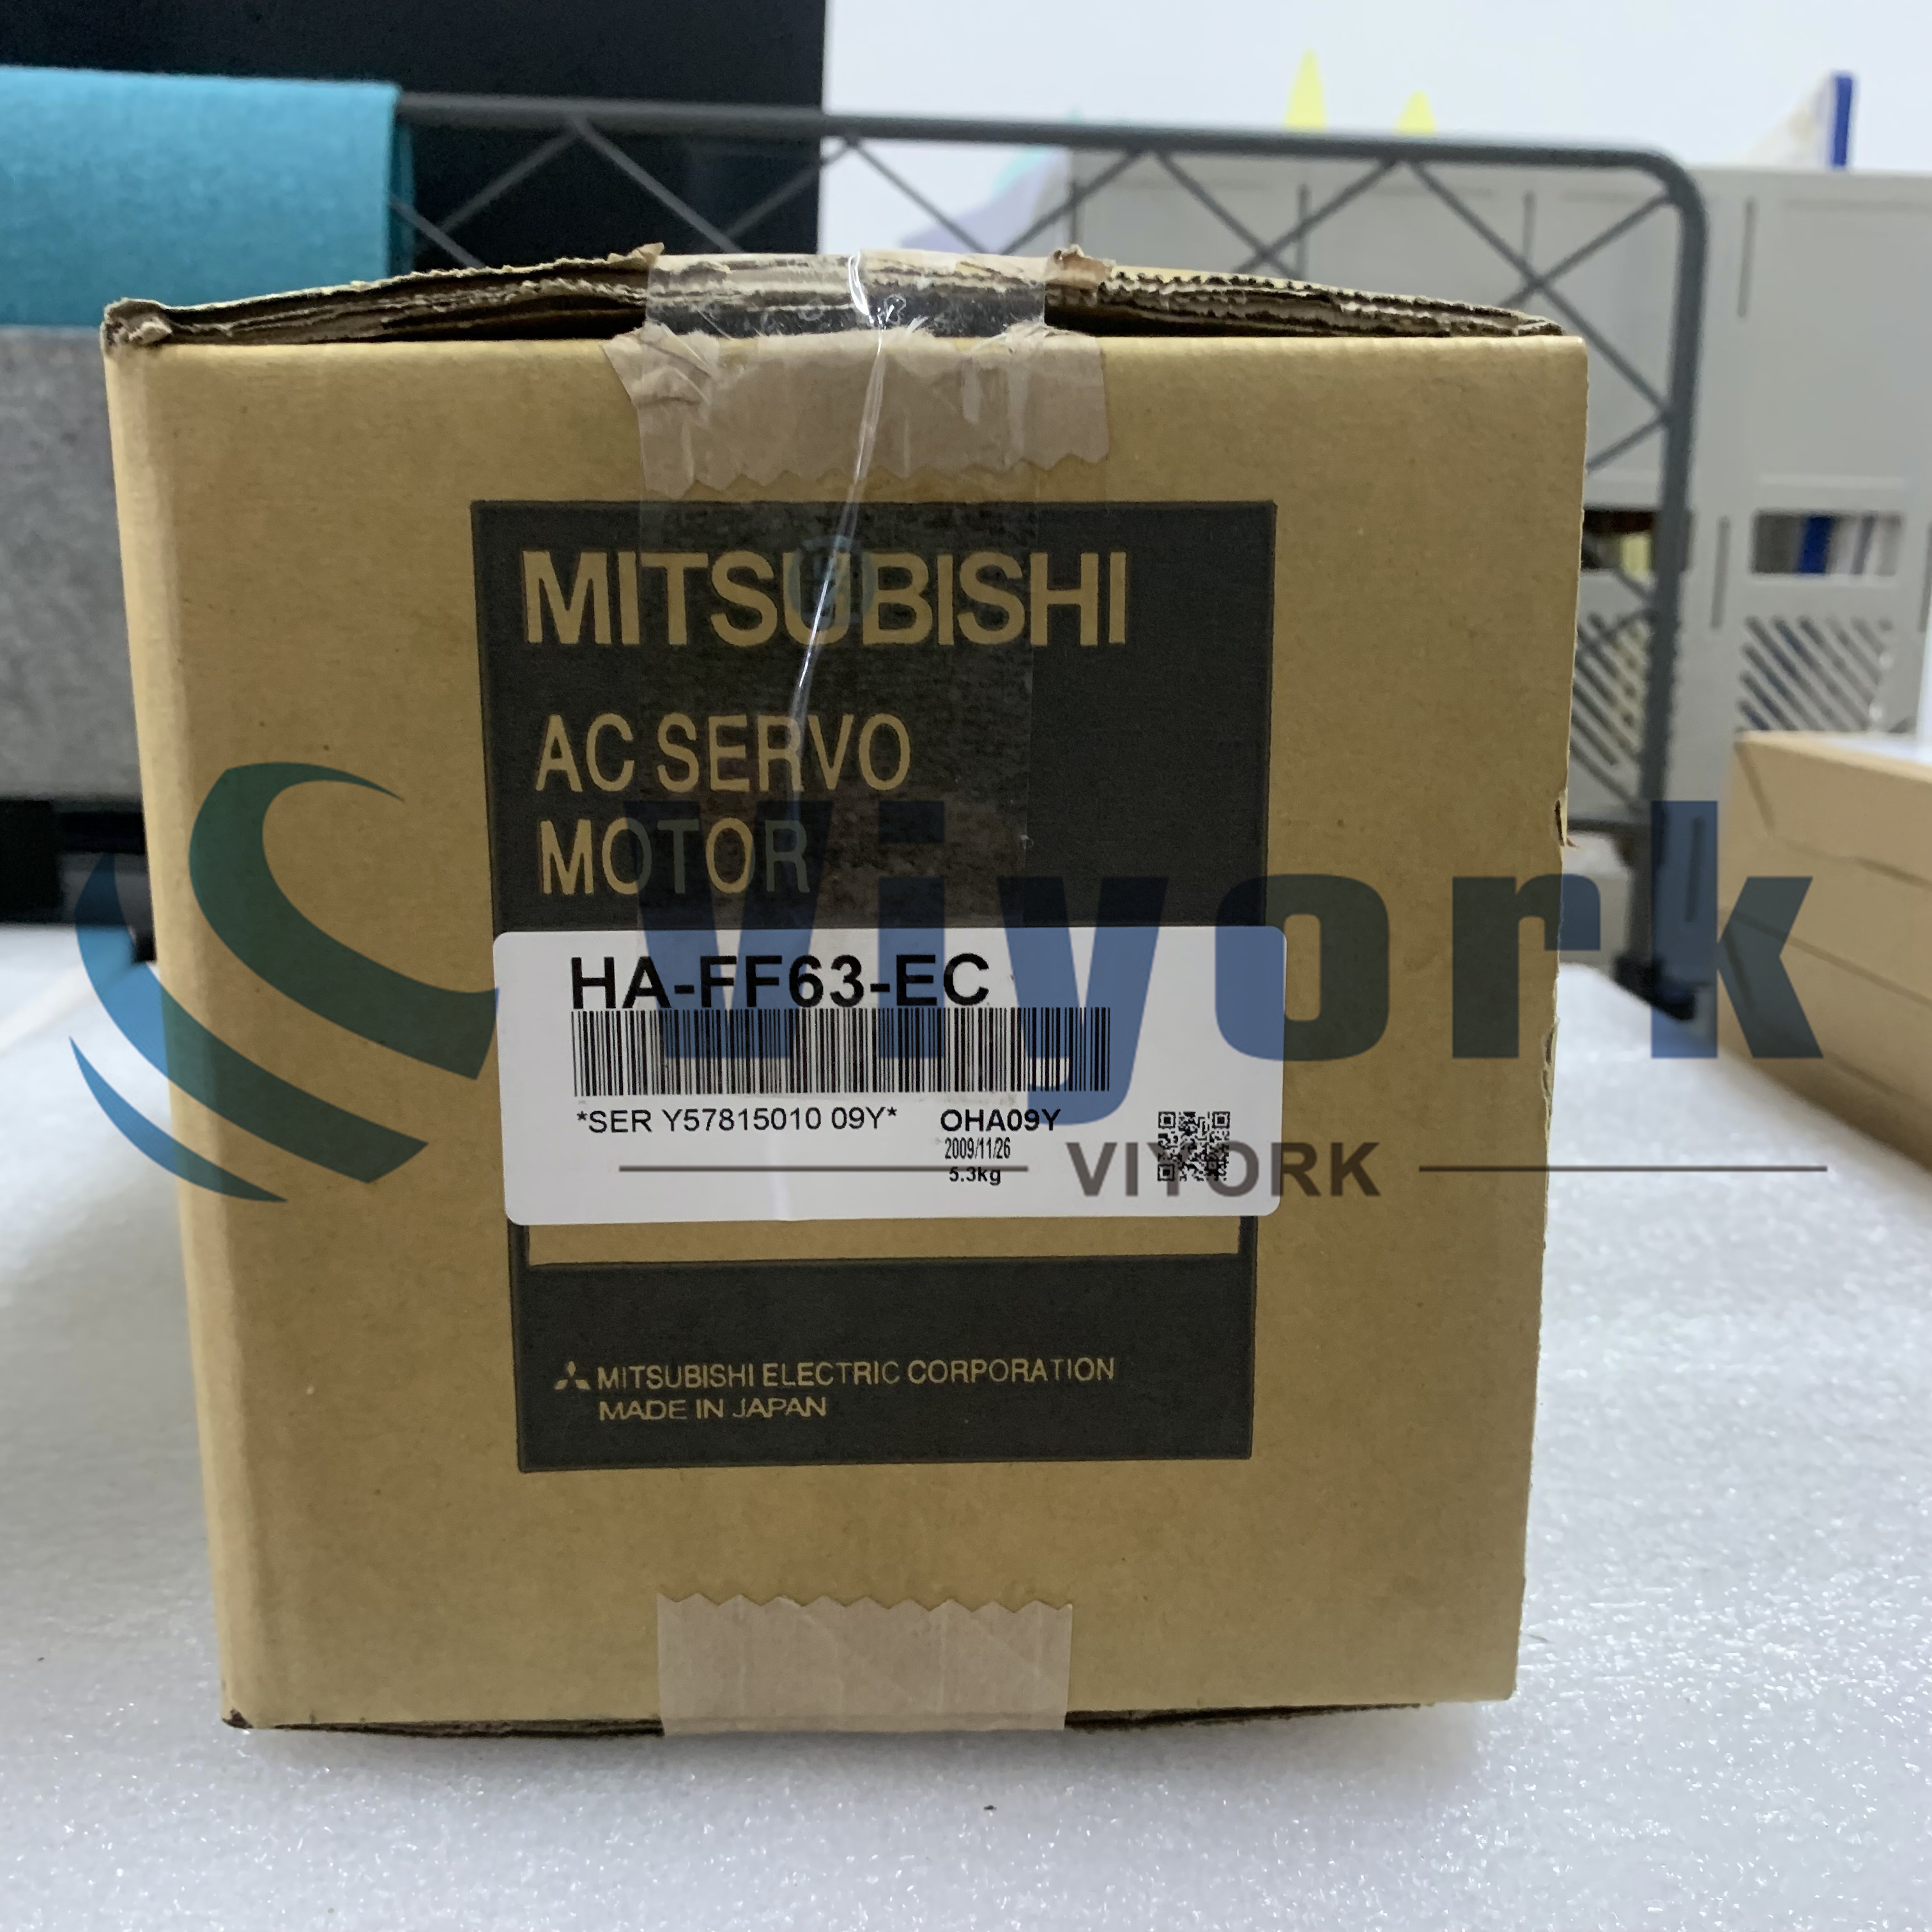 Mitsubishi HA-FF63-EC AC SERVO MOTOR 3.6AMP 600W 3000RPM 129V NEW